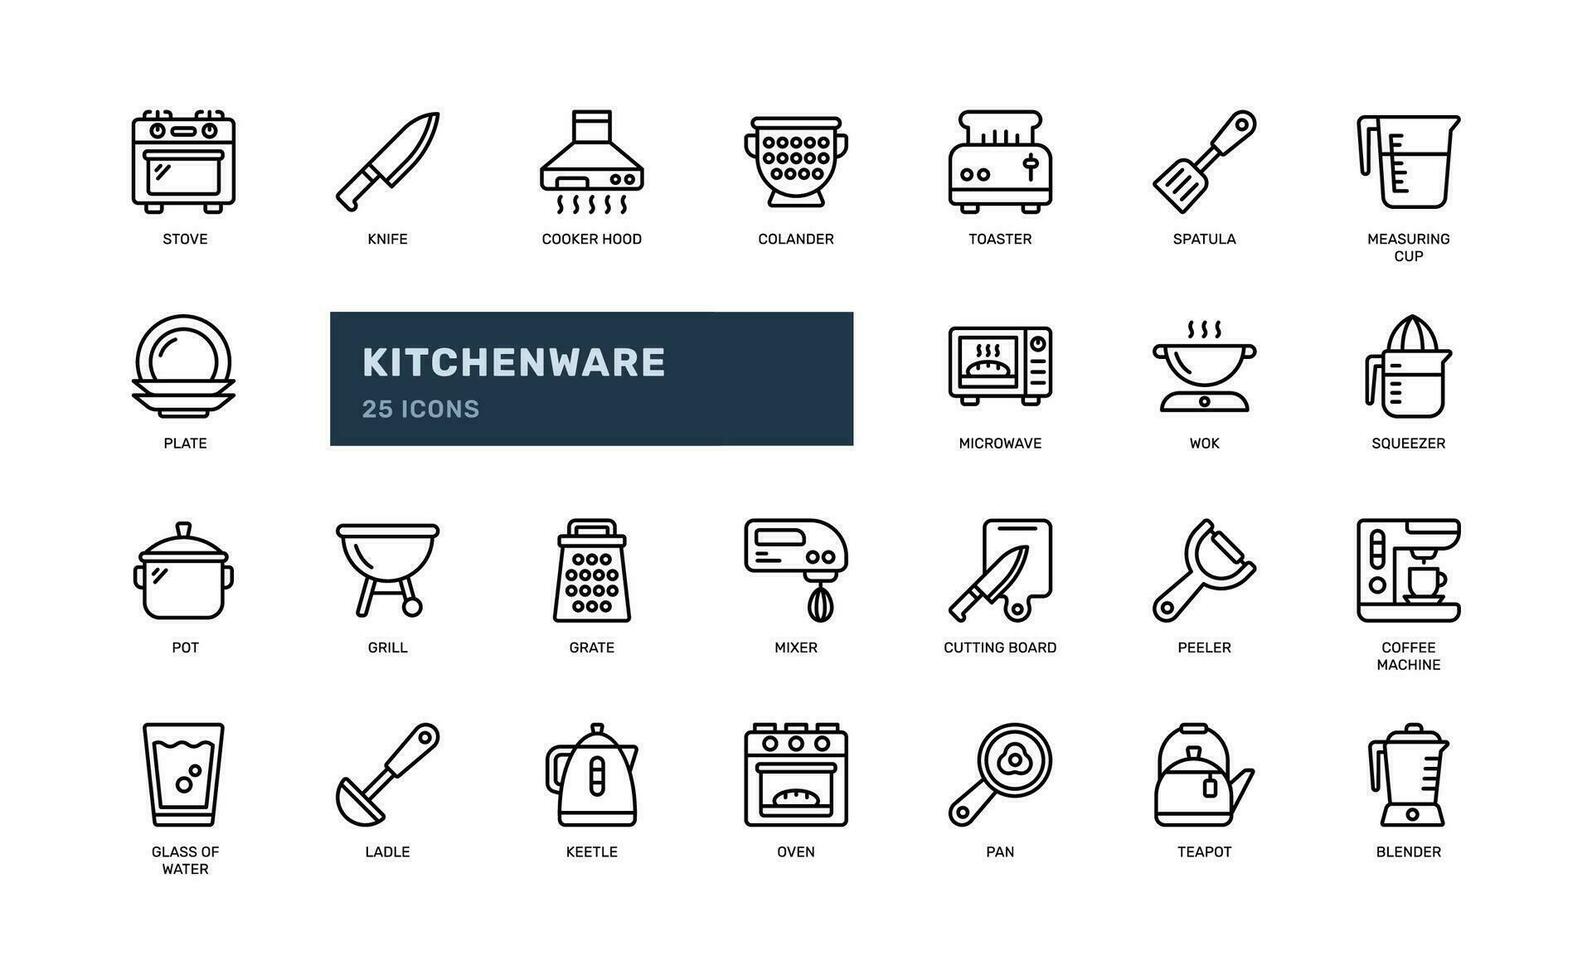 ustensiles de cuisine cuisine ustensile équipement pour cuisine ou ustensiles de cuisine Ménage ou restaurant détaillé contour ligne icône vecteur